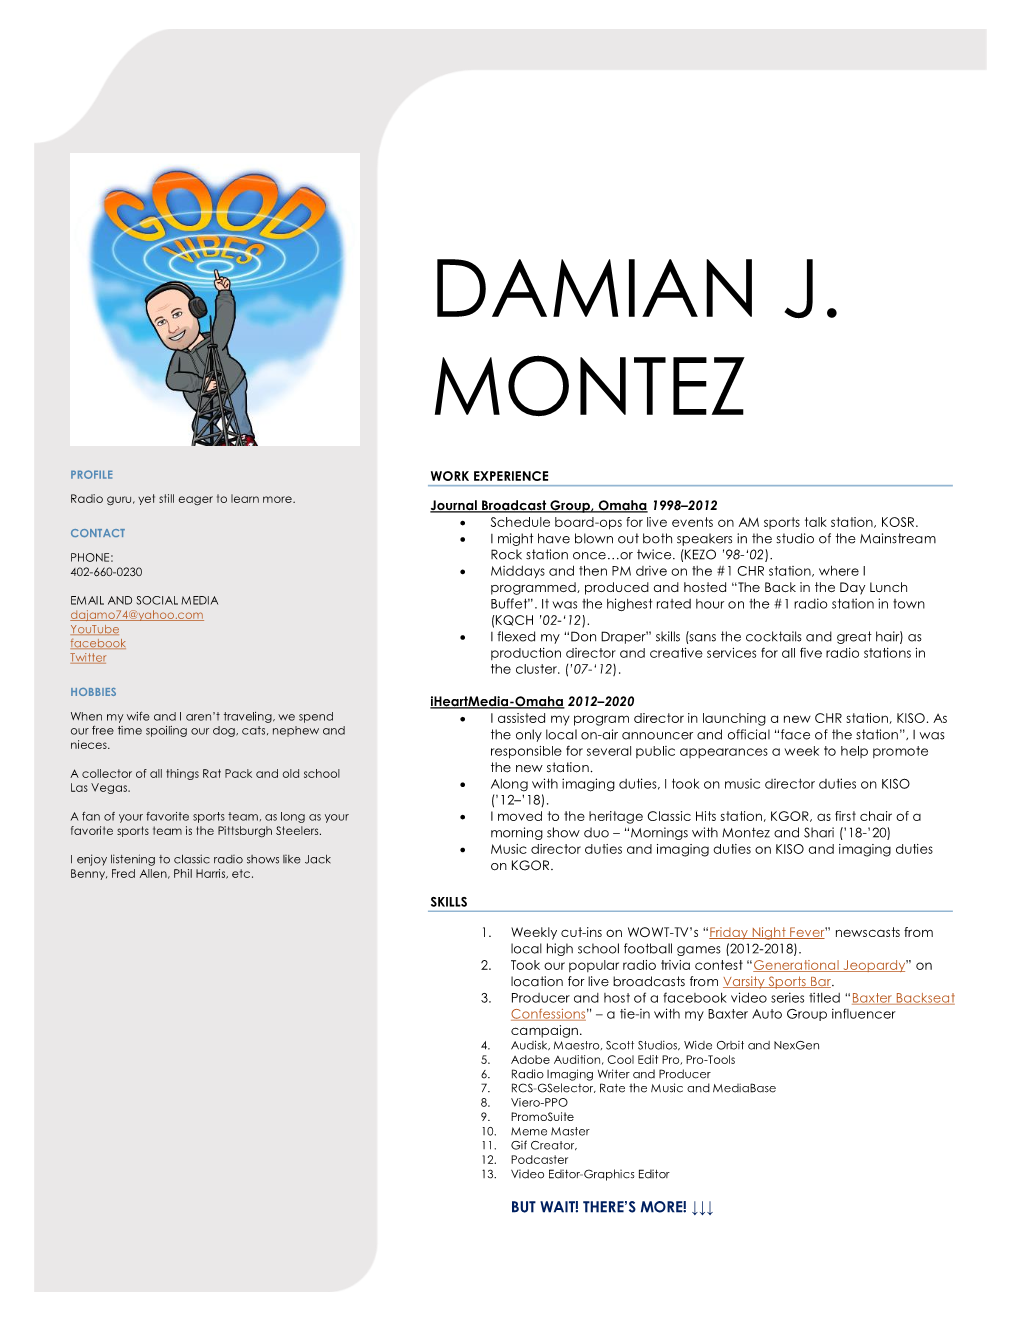 Damian J. Montez